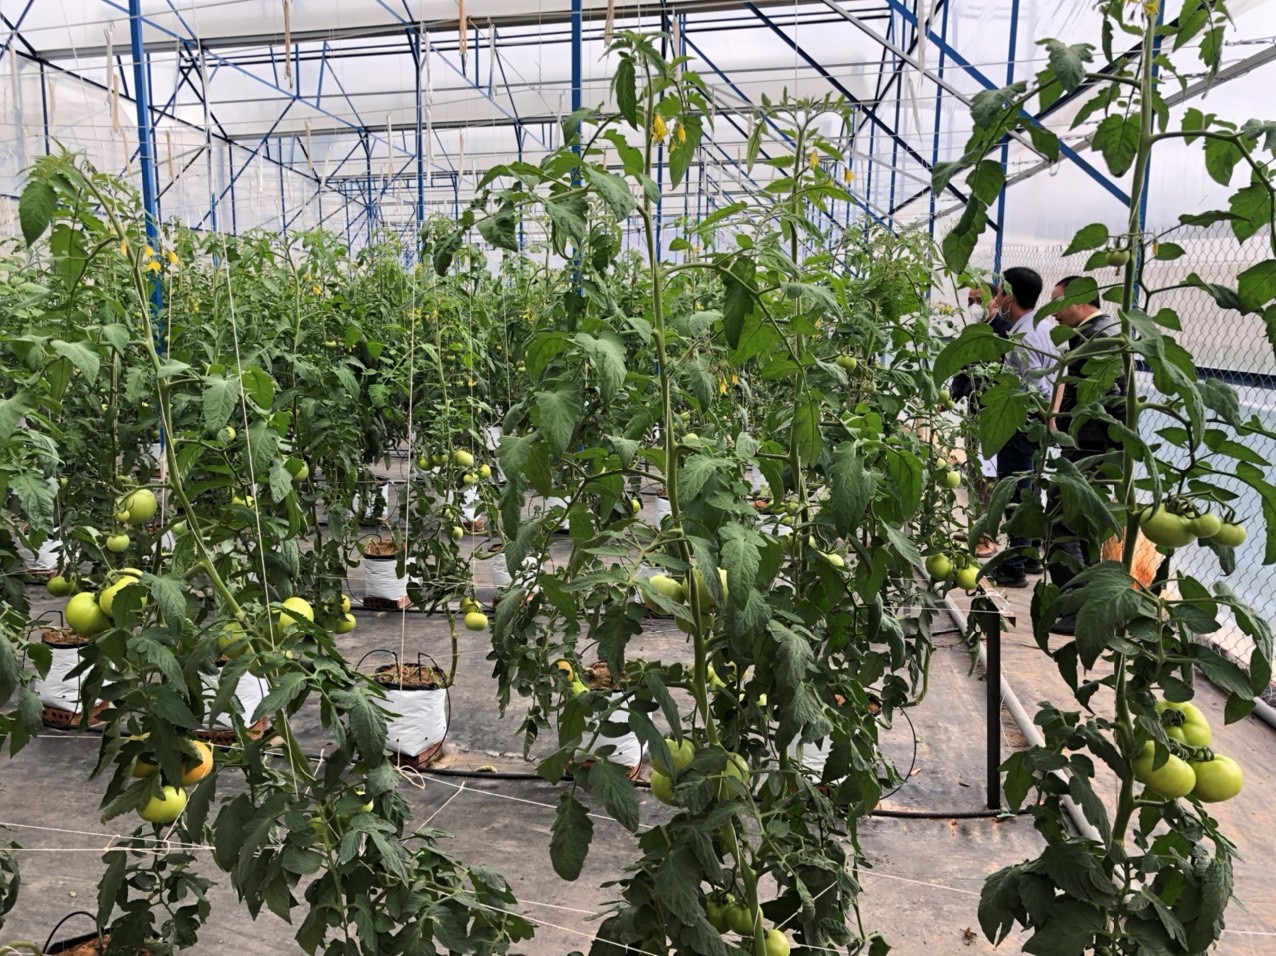 Hiệu quả liên kết và tiêu thụ nông sản trong mùa dịch Covid - 19 tại Hợp tác xã Nông nghiệp Sunfood Đà Lạt